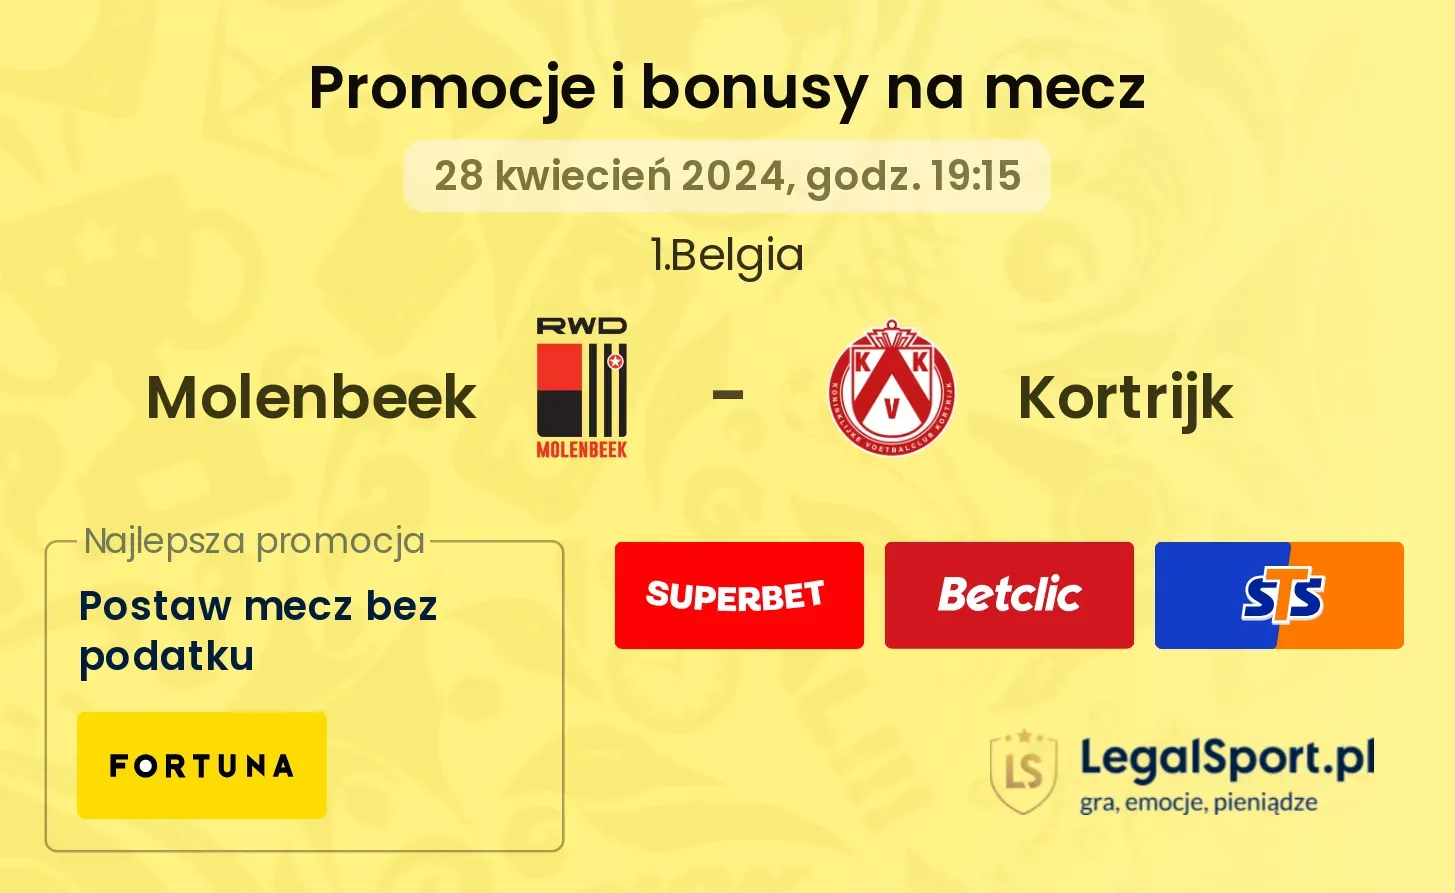 Molenbeek - Kortrijk promocje bonusy na mecz